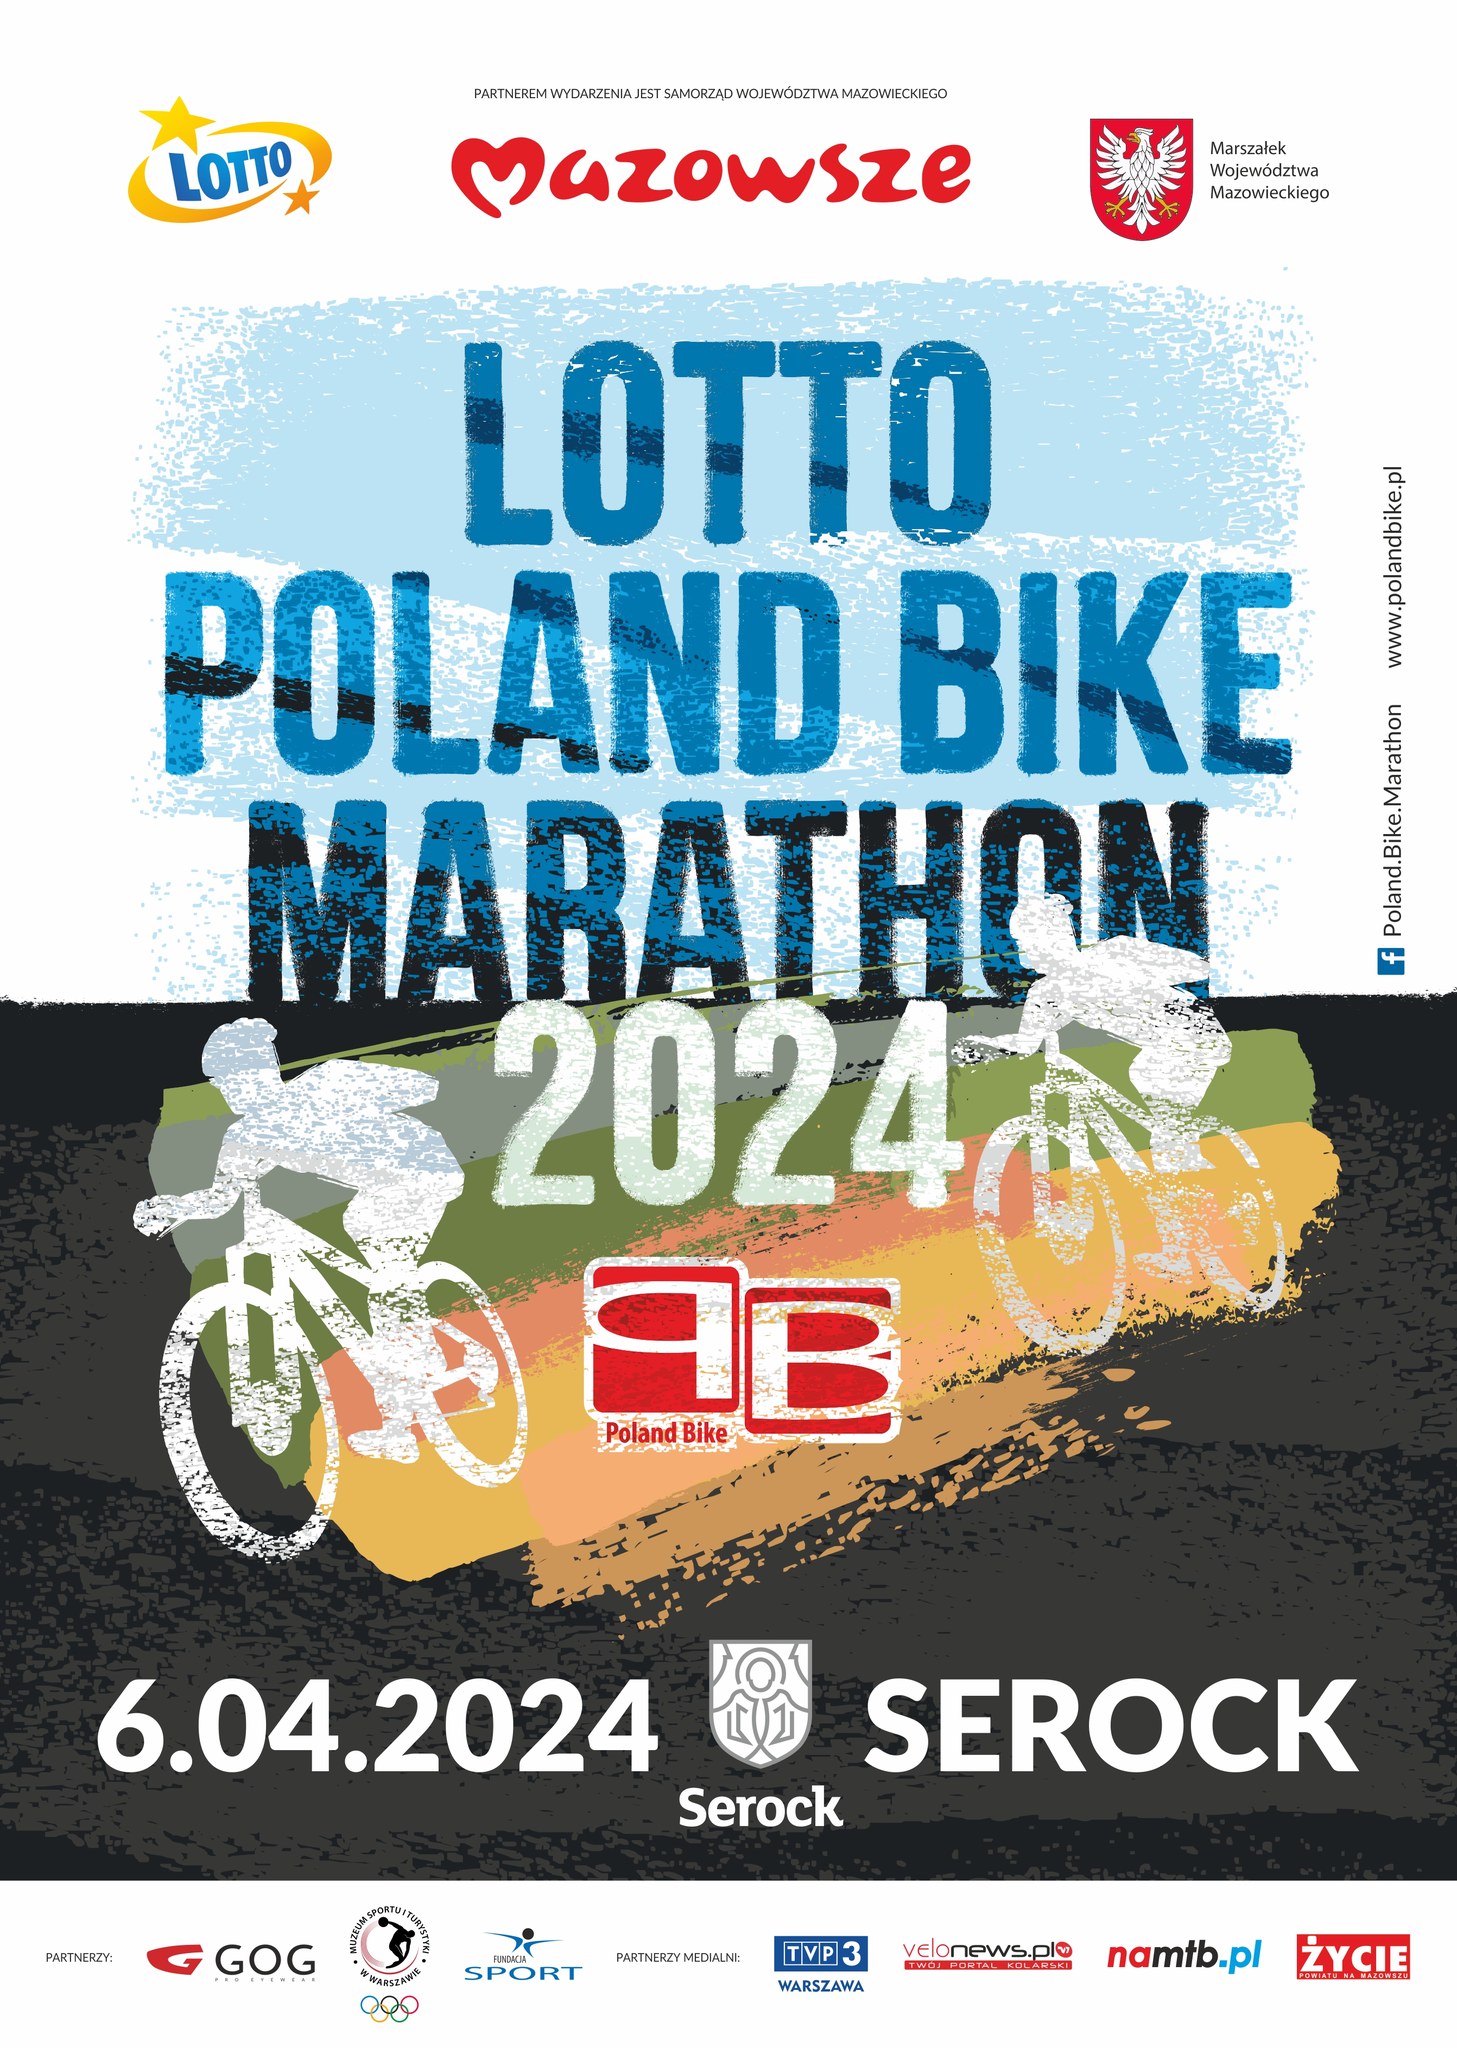 6 kwietnia 2024. LOTTO Poland Bike Marathon jedzie do Serocka!